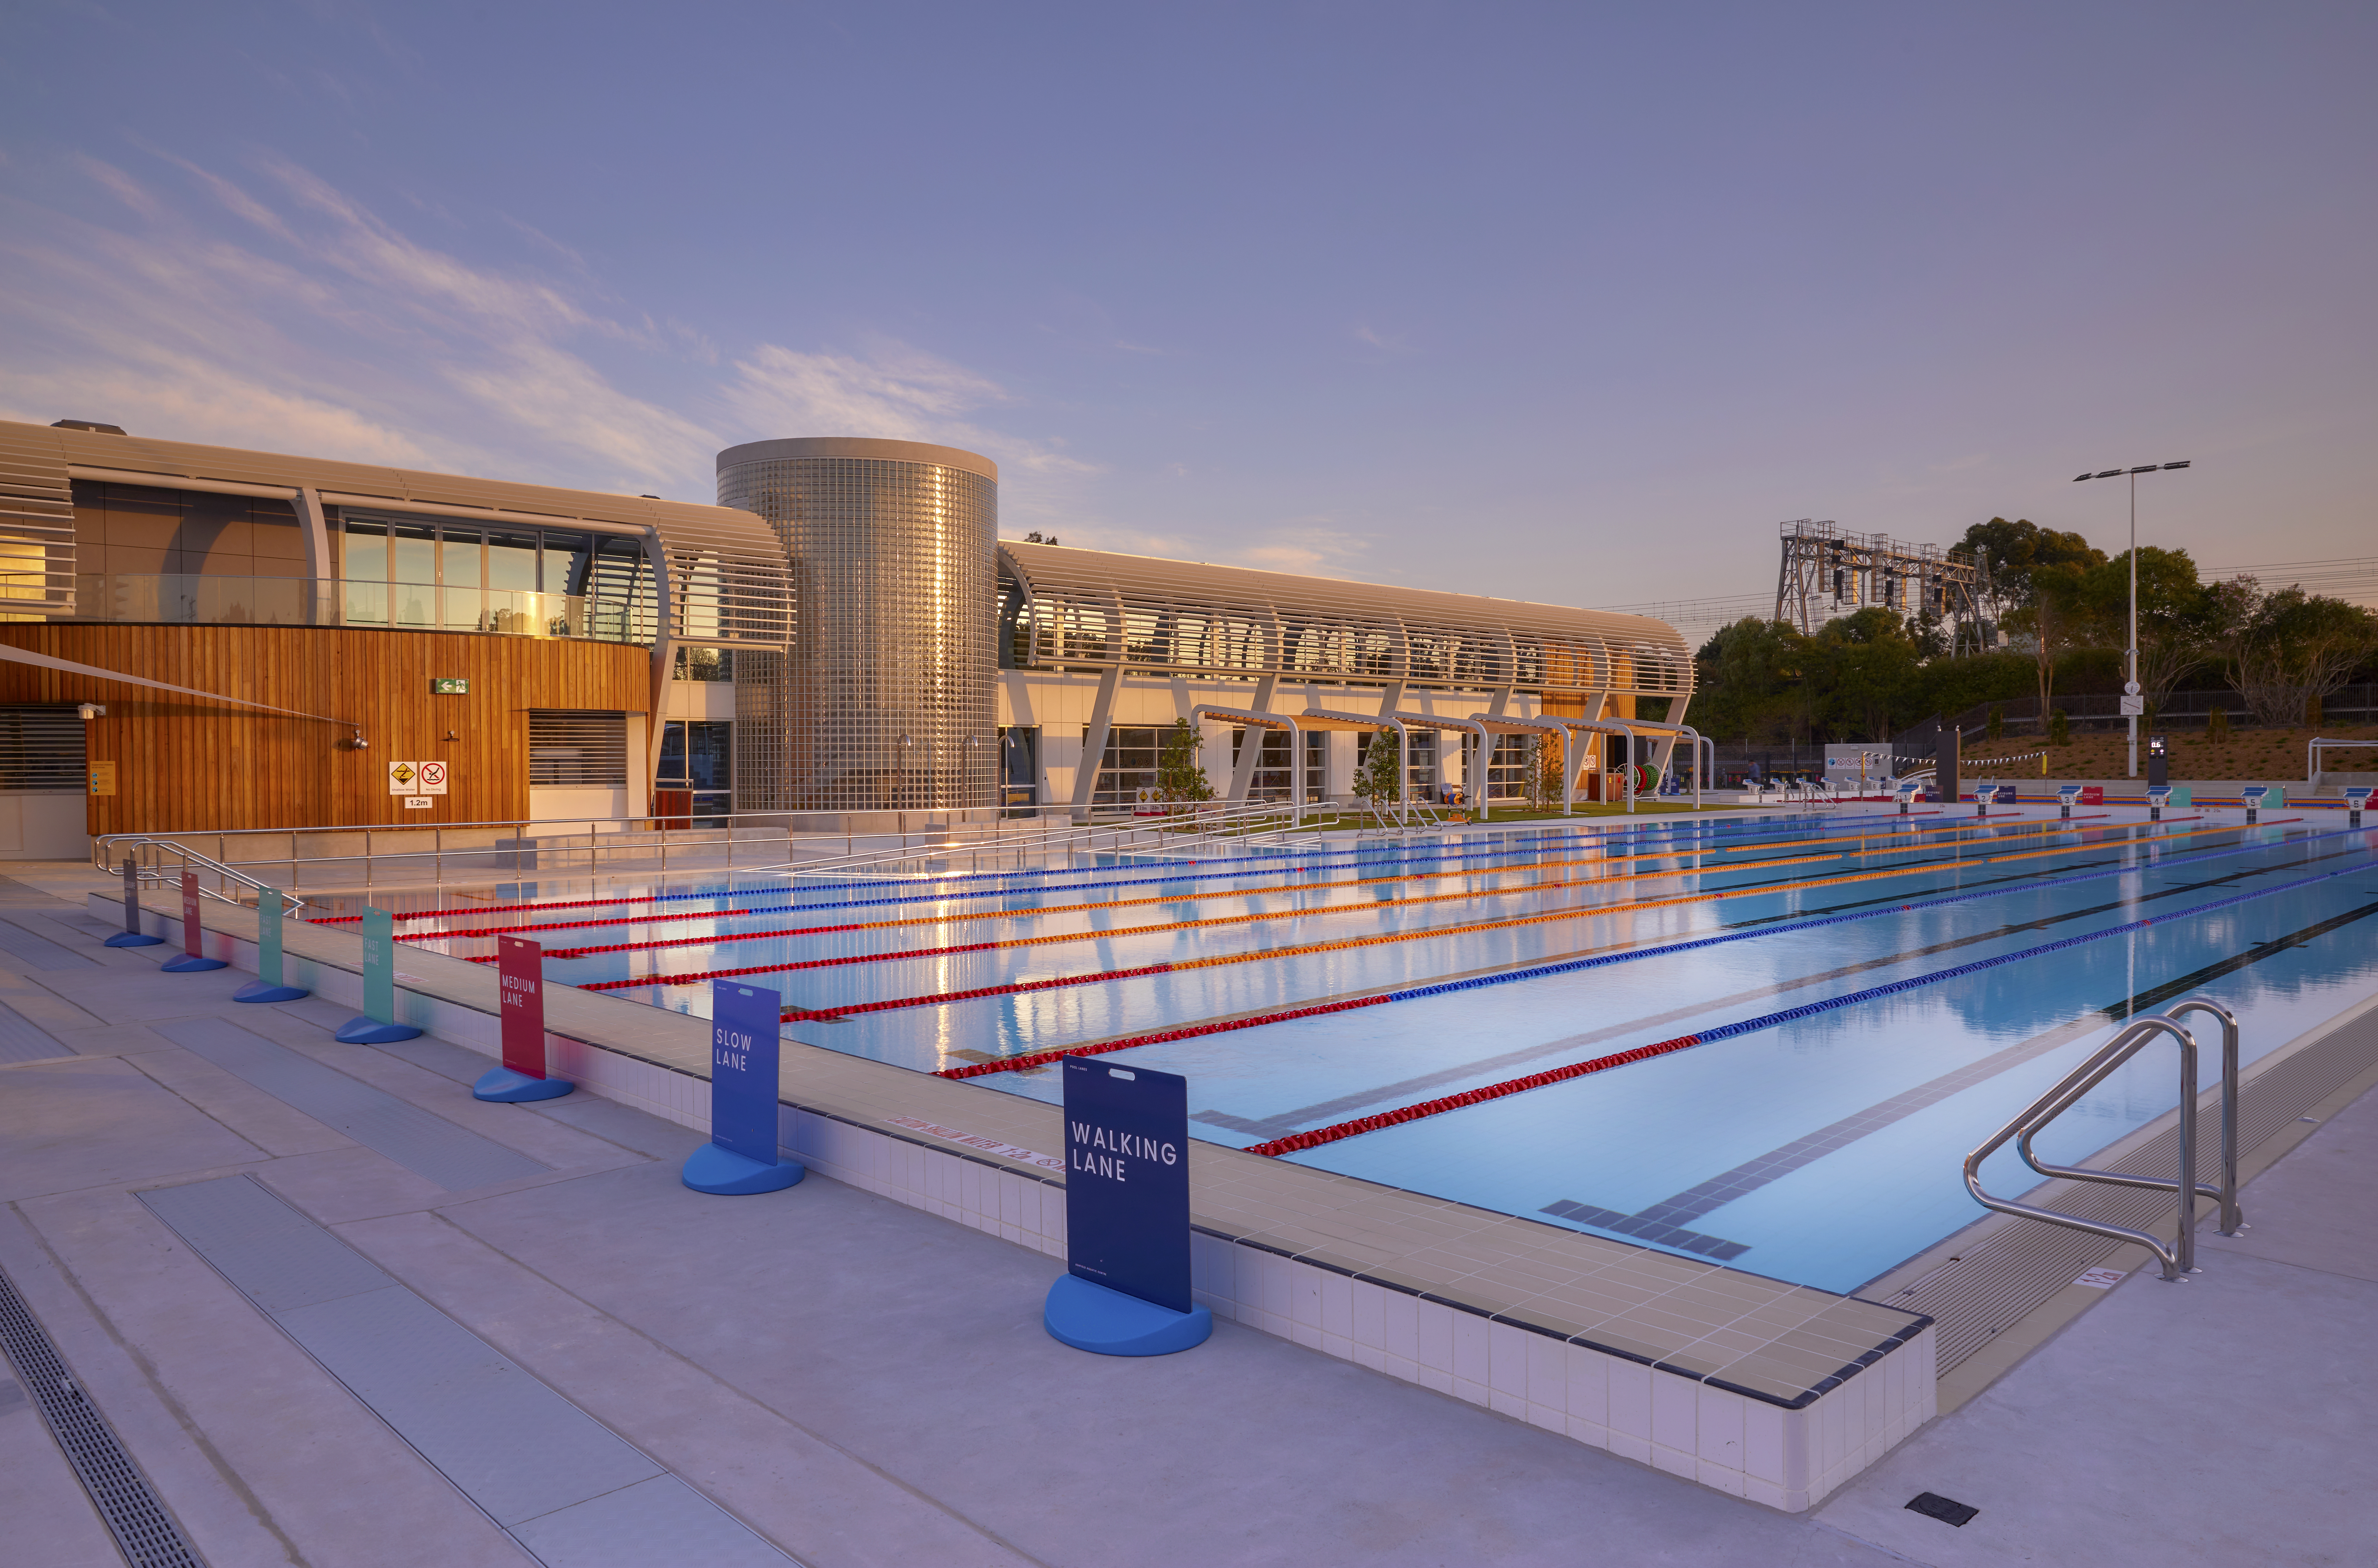 Ashfield Aquatic Centre - Evening shot of outdoor pool